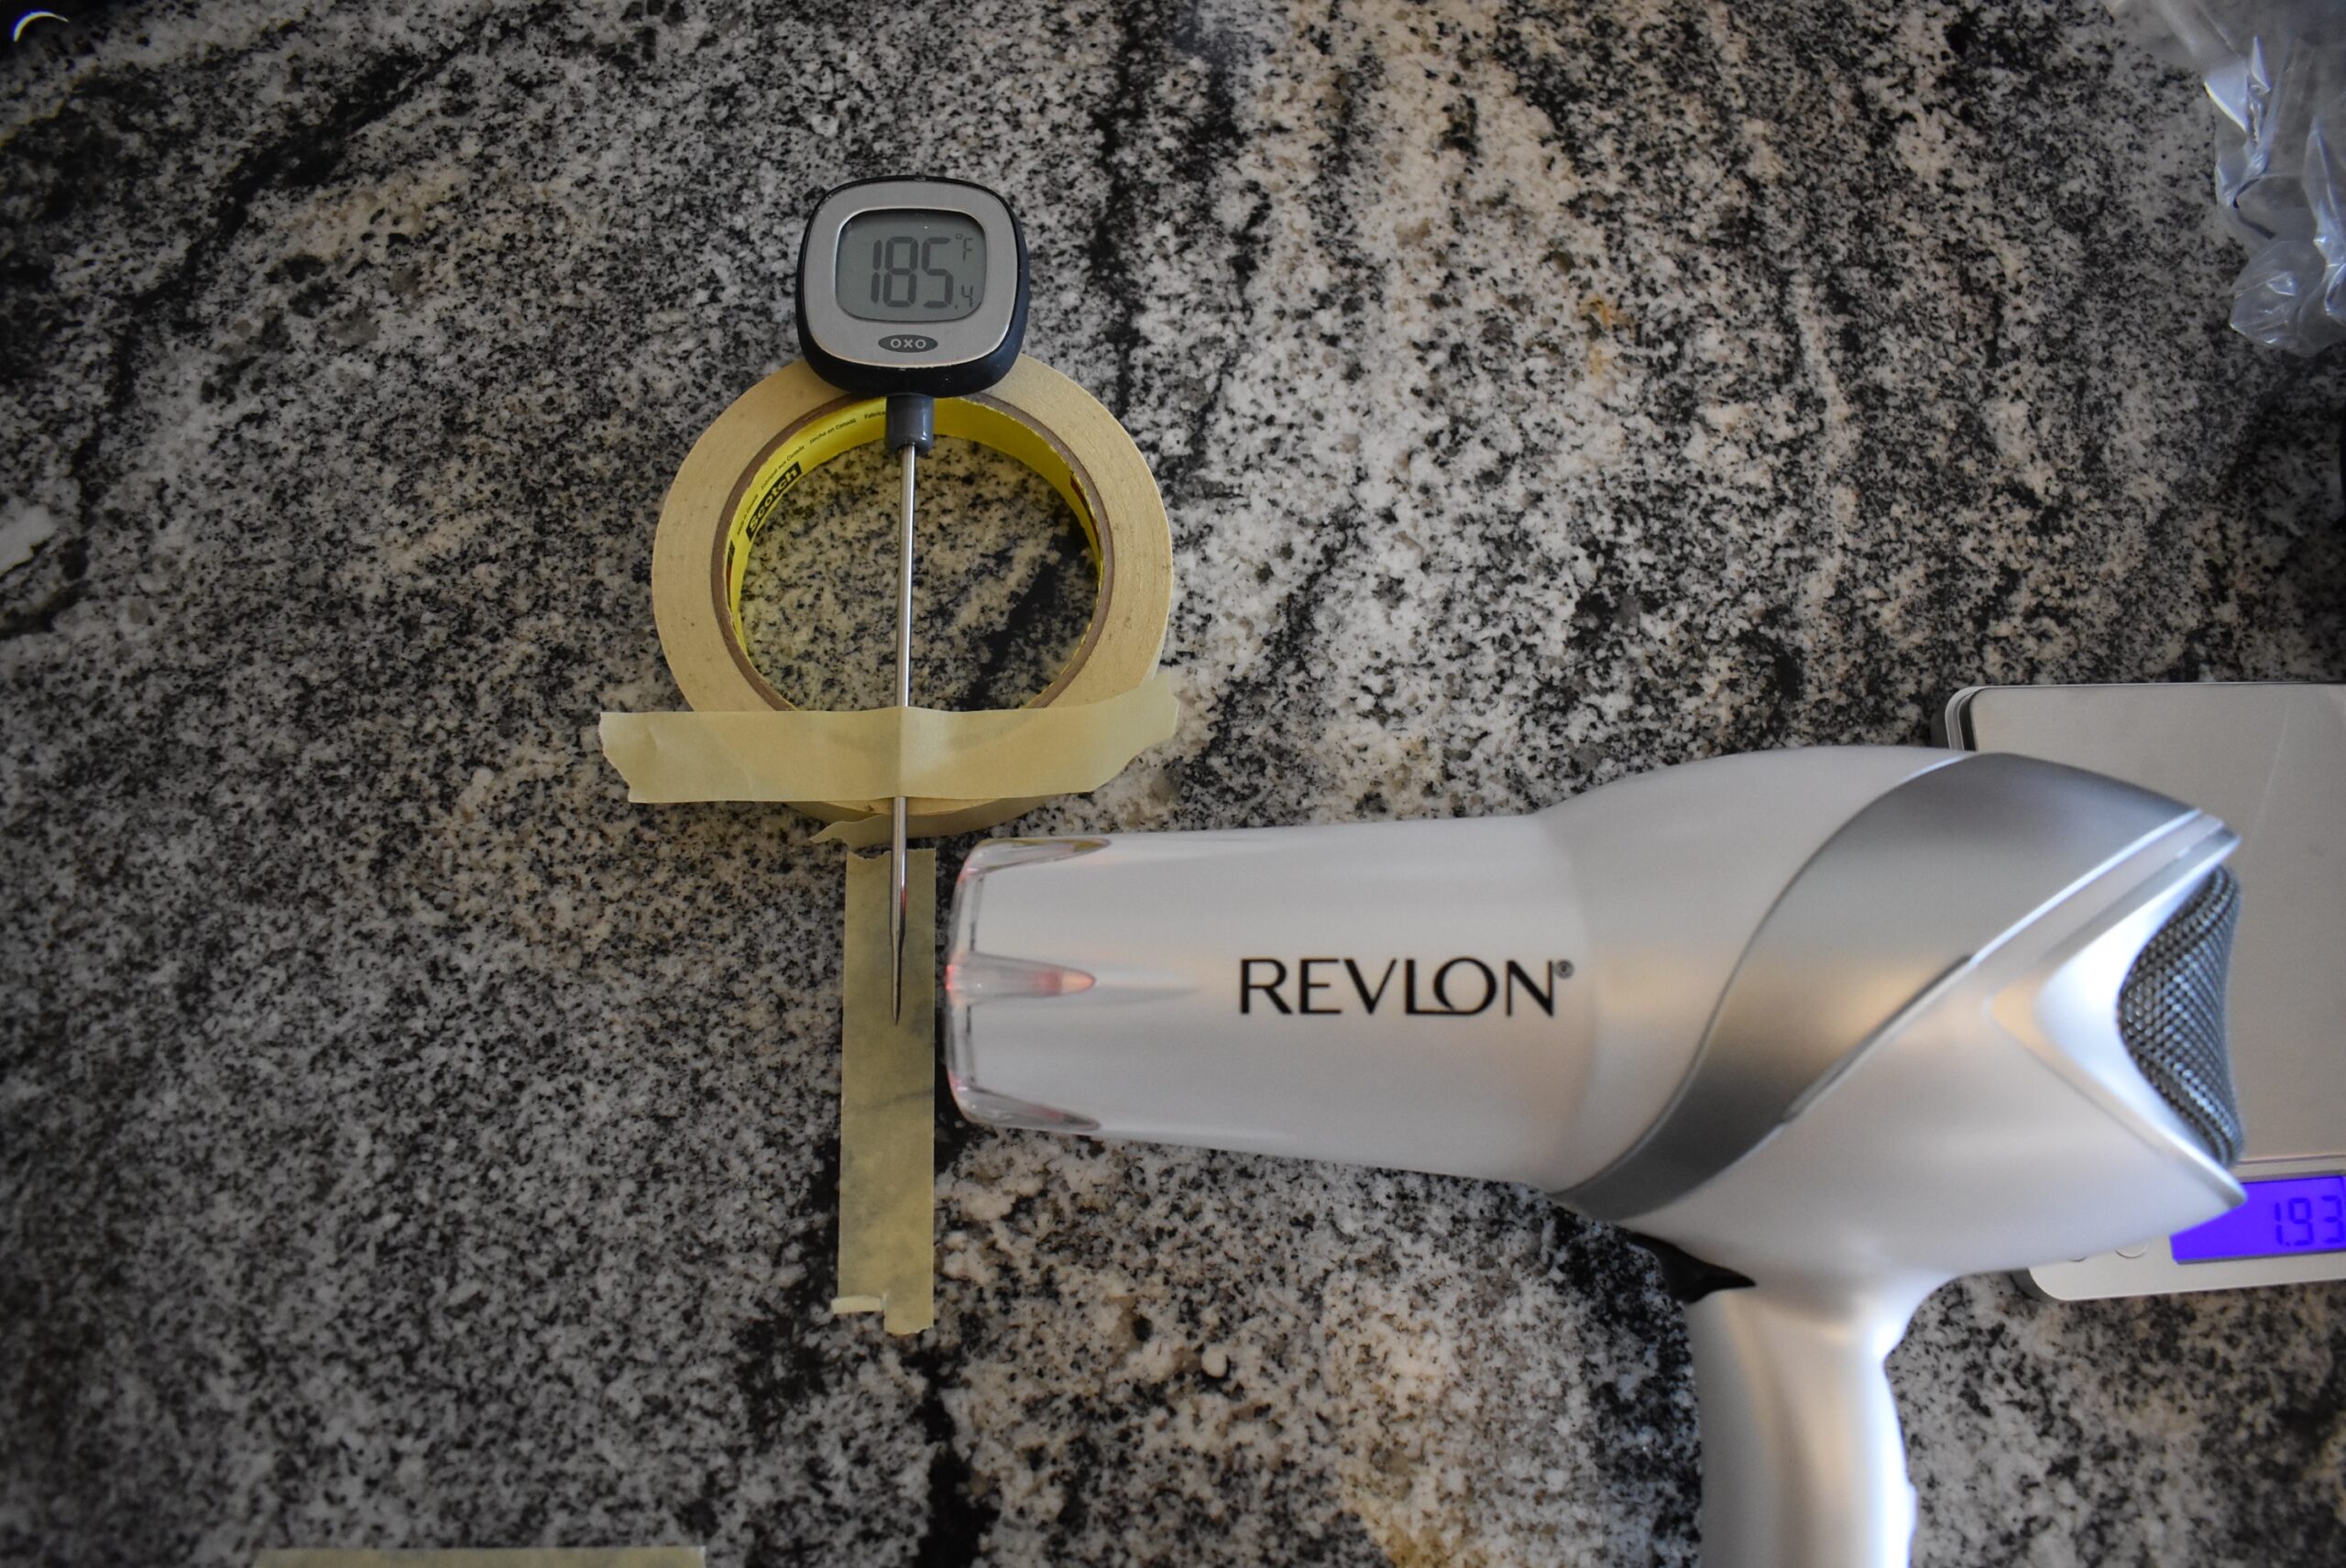 De Revlon 1875 watt föhn registreert 185 graden farenheit op een keuken thermometer